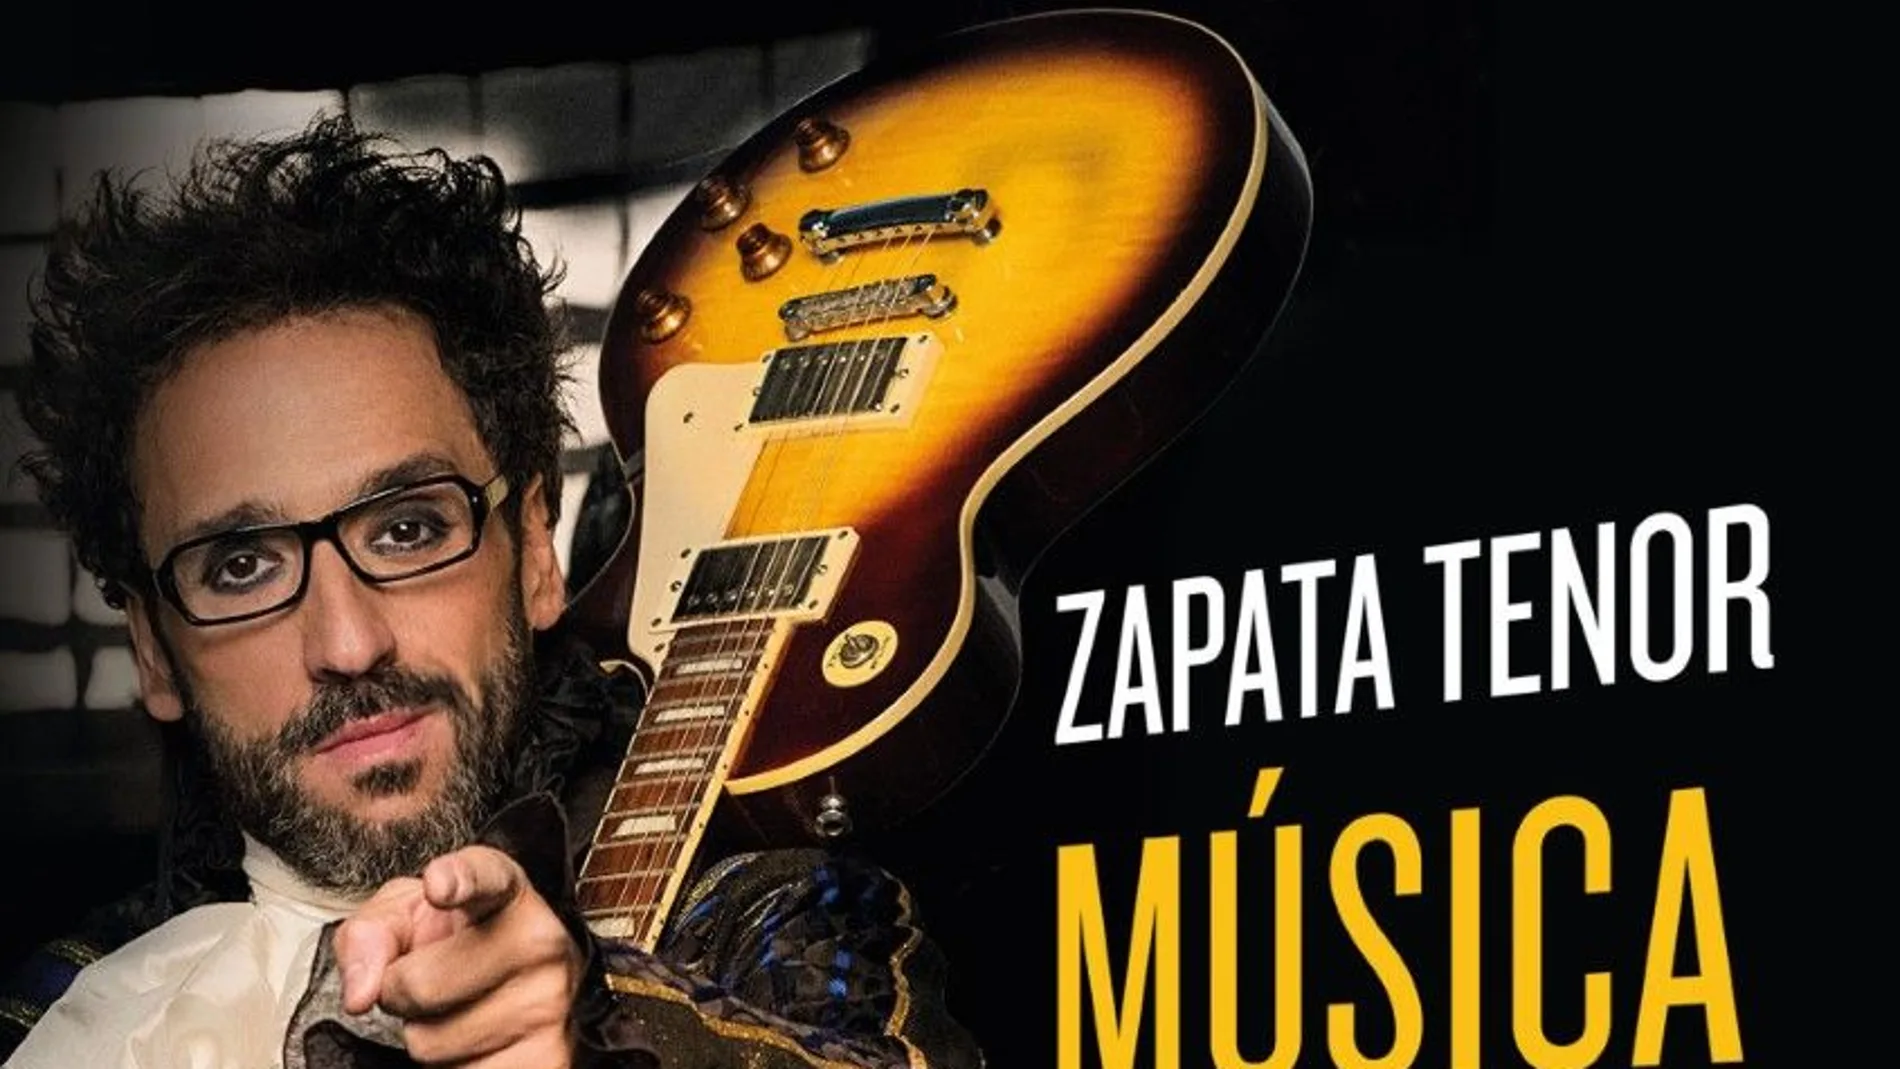 Portada del libro "Música para la vida", de Zapata Tenor